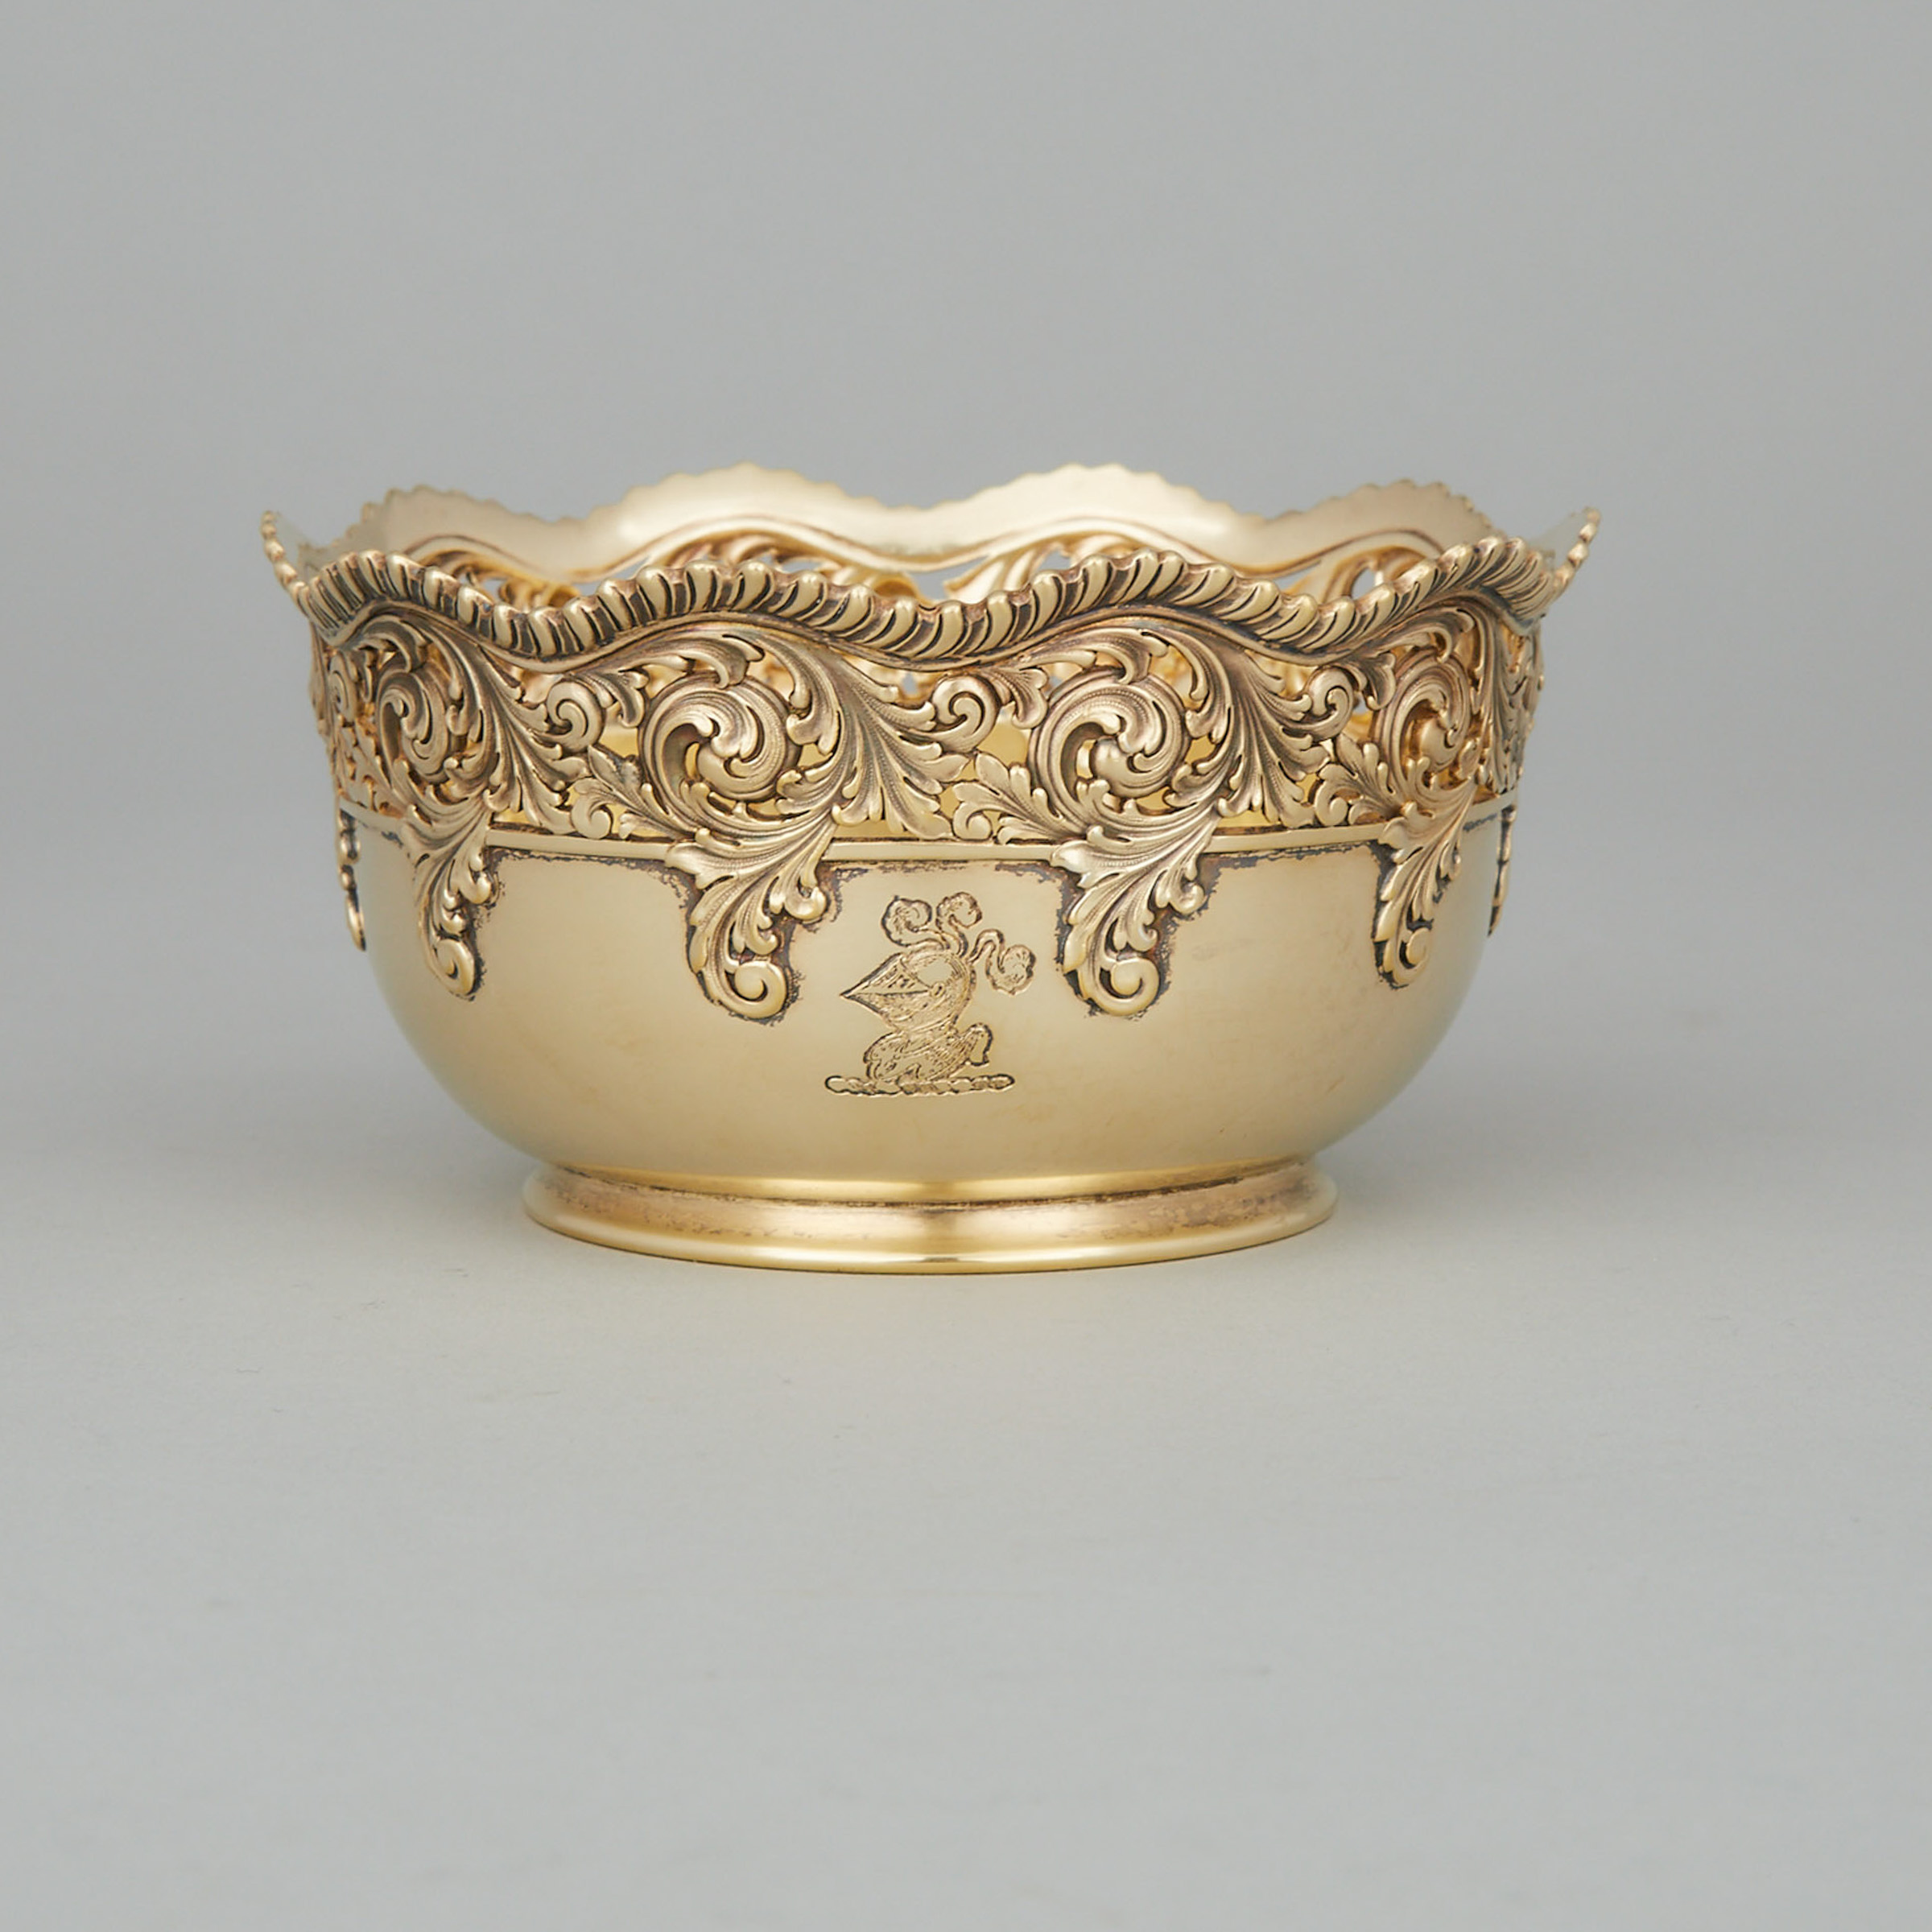 American Silver-Gilt Pierced Bowl, Tiffany & Co., New York, N.Y., late 19th century